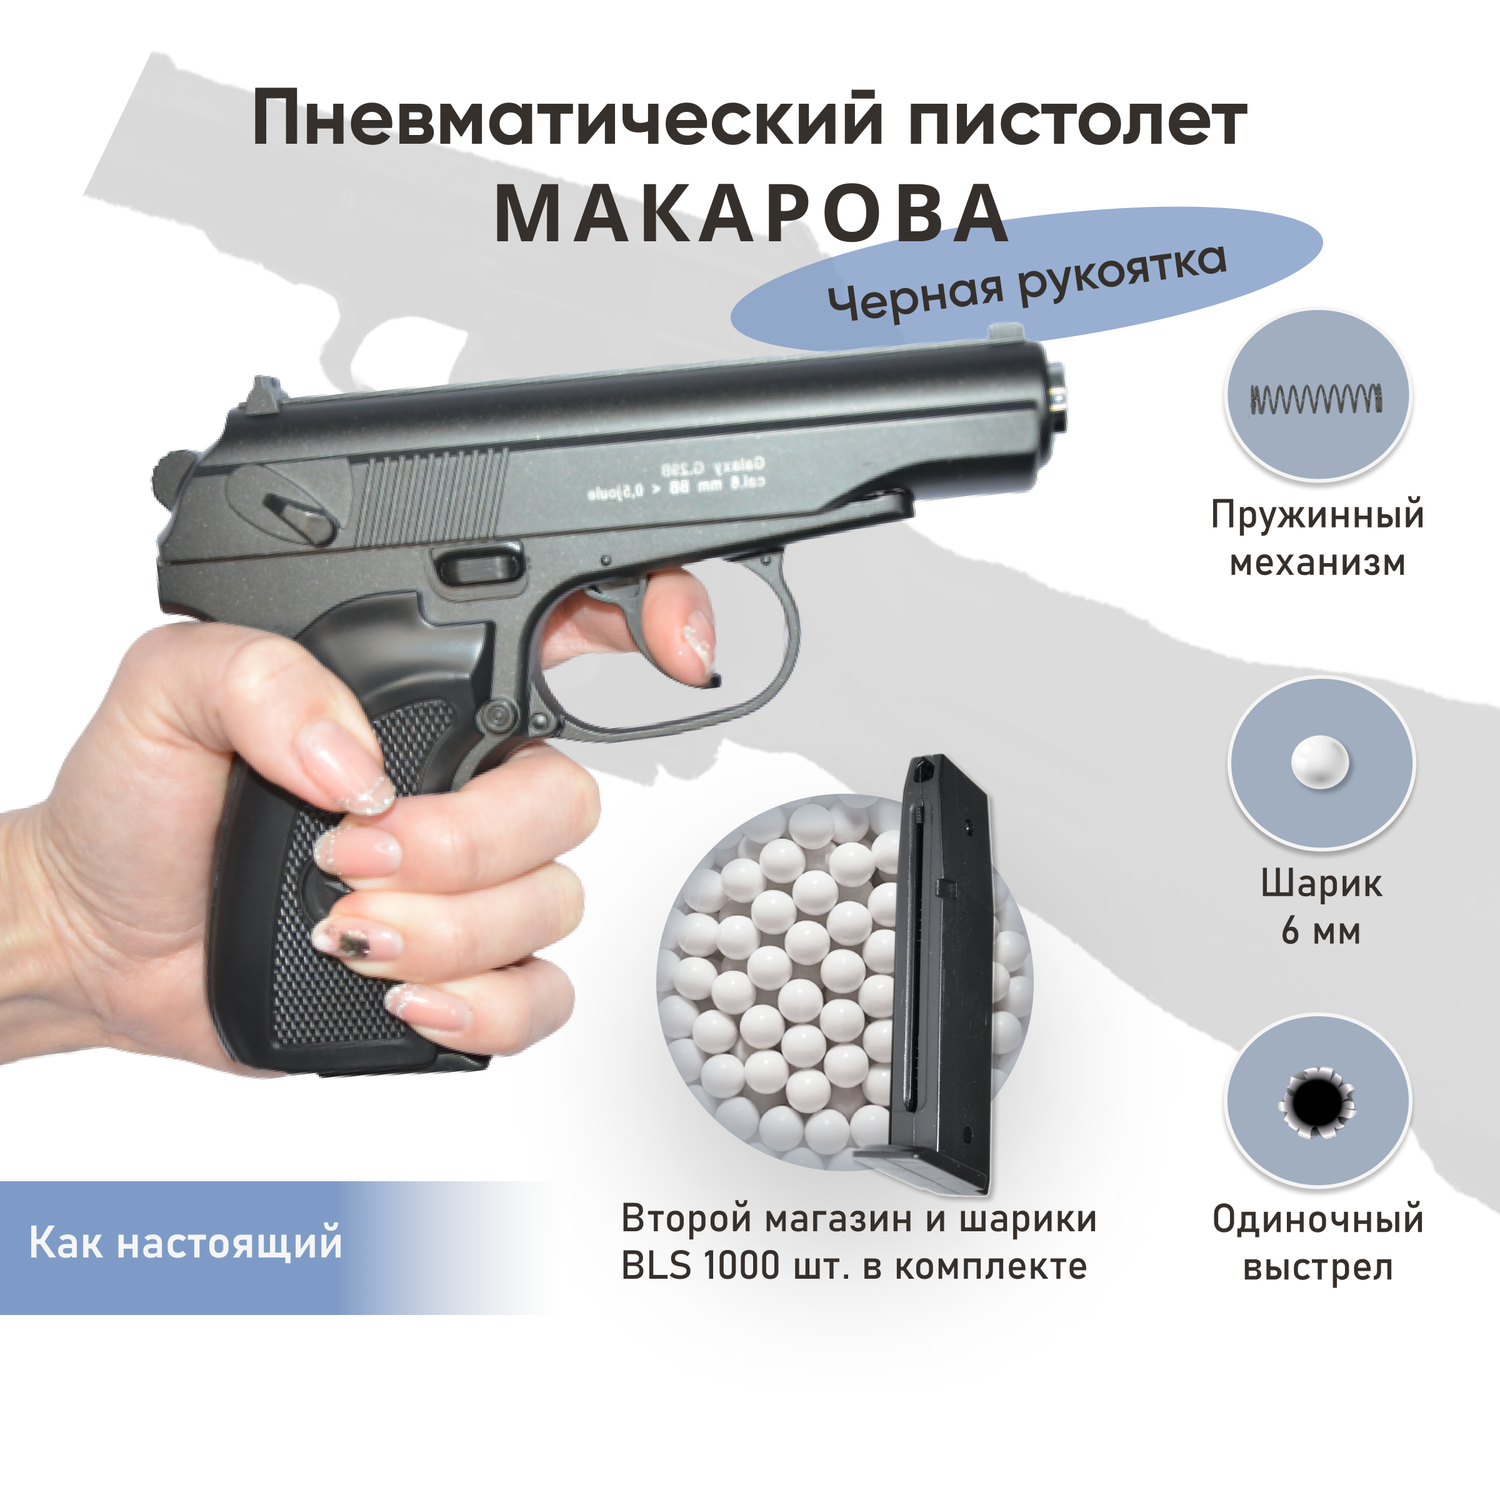 Пневматический пистолет Galaxy Макарова черная рукоятка второй магазин и шарики 1000 шт. - фото 3